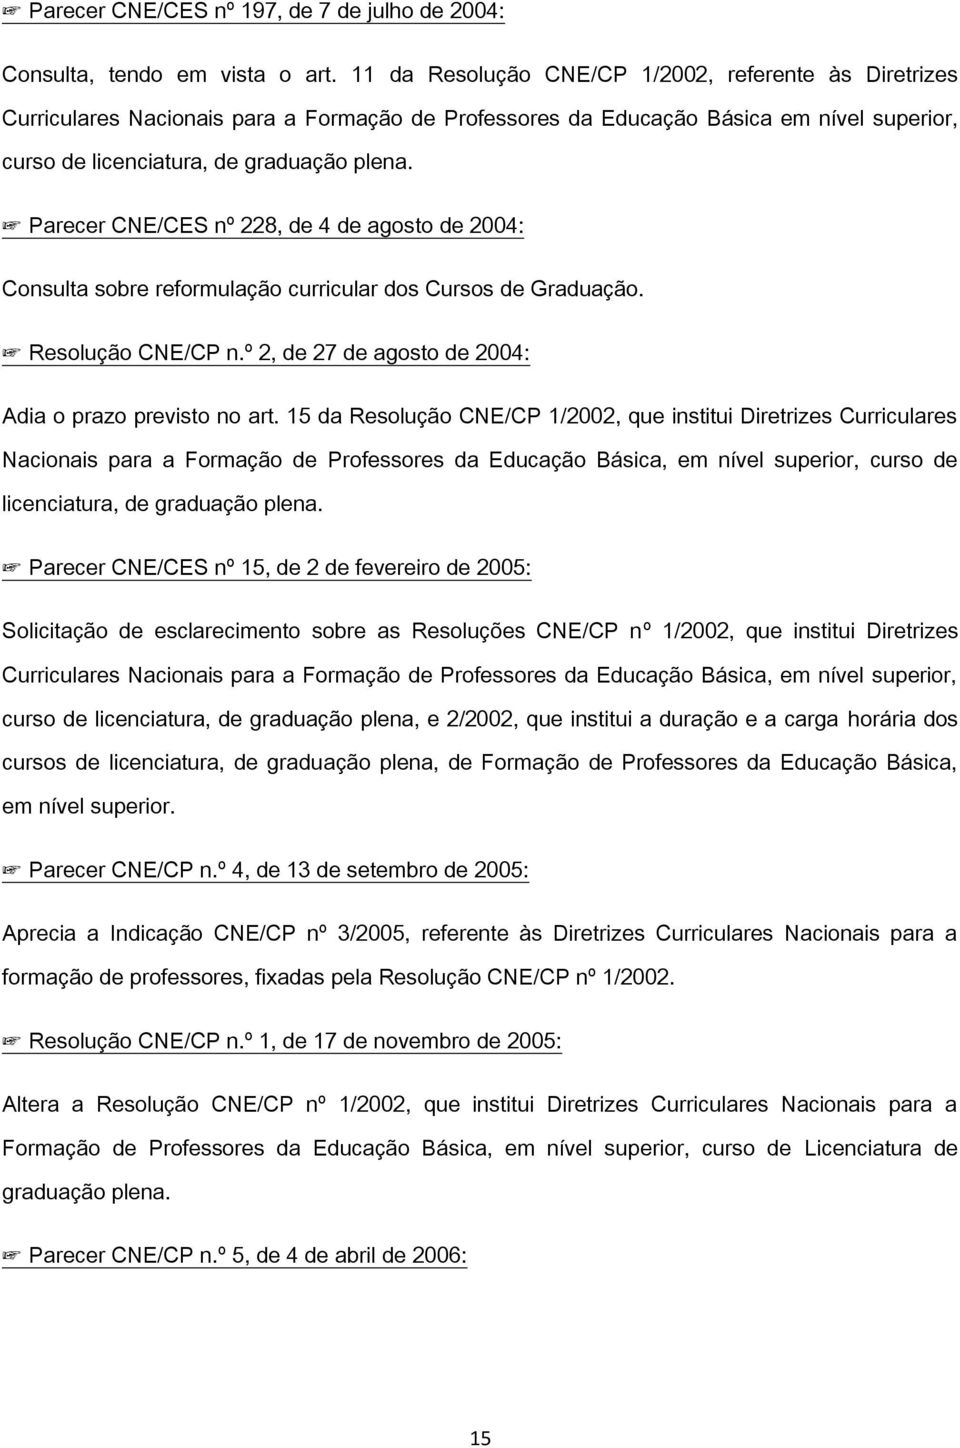 Parecer CNE/CES nº 228, de 4 de agosto de 2004: Consulta sobre reformulação curricular dos Cursos de Graduação. Resolução CNE/CP n.º 2, de 27 de agosto de 2004: Adia o prazo previsto no art.